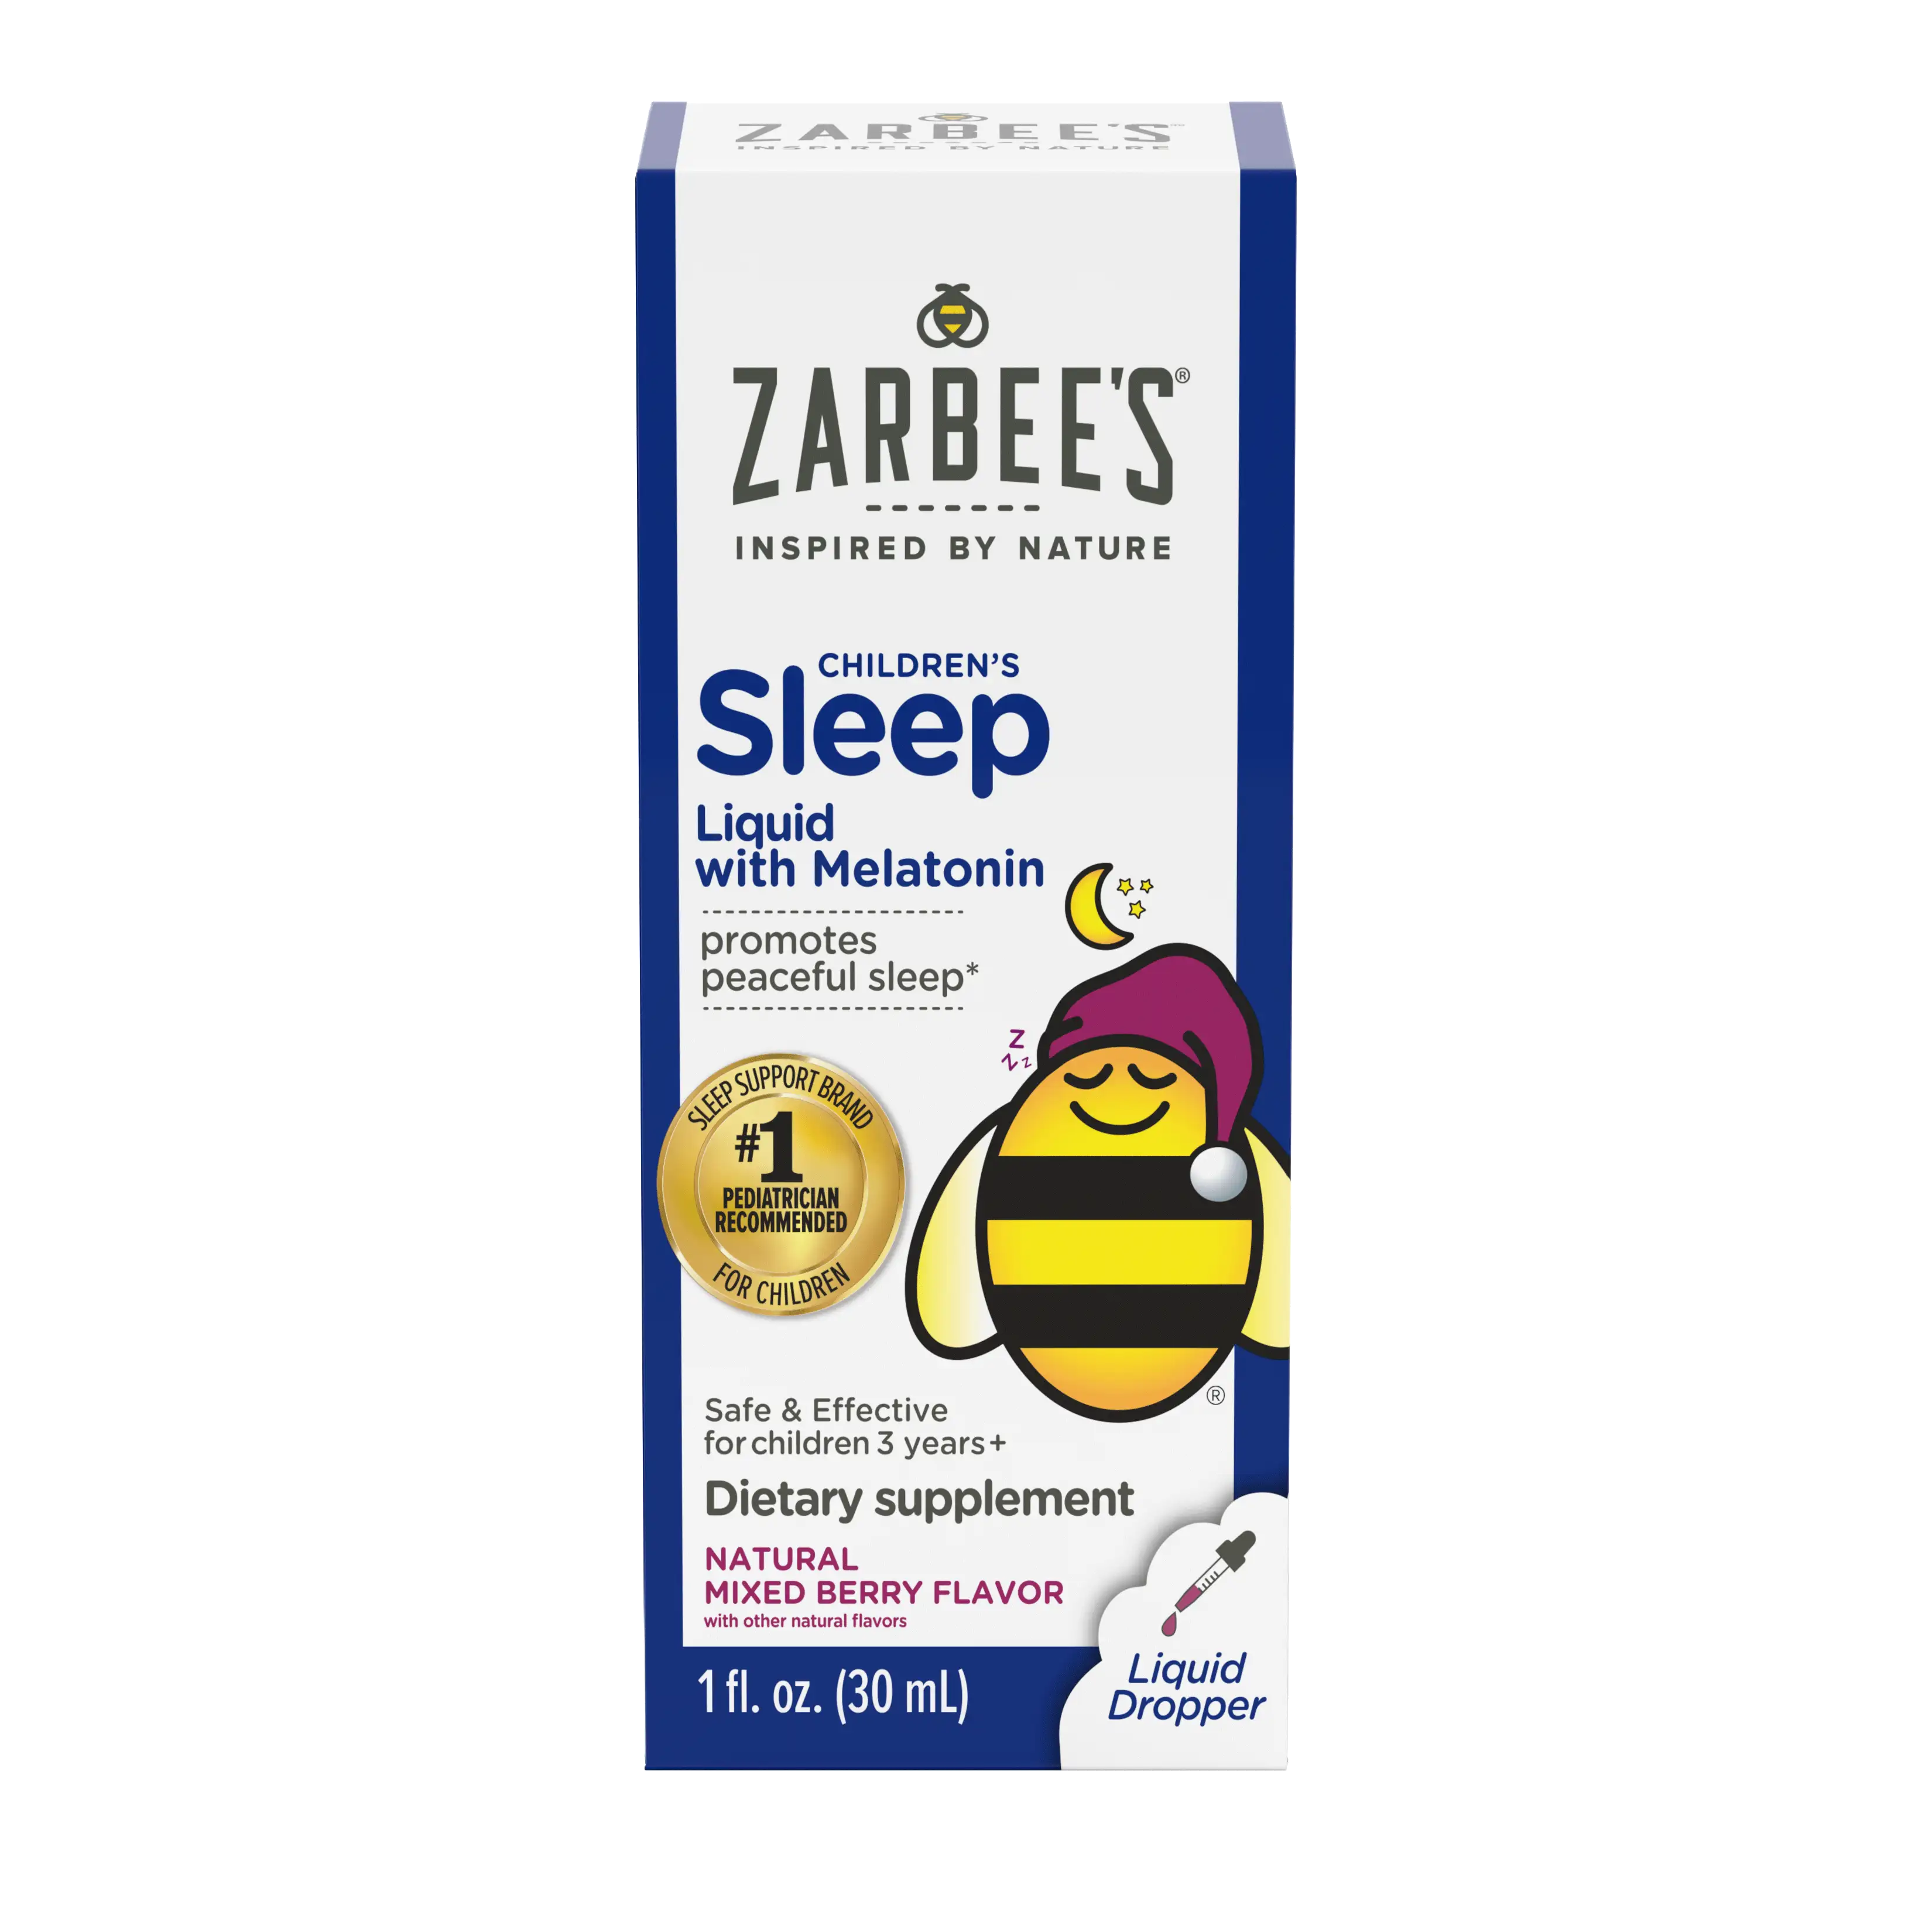 Front packaging of Zarbee’s® Children’s Sleep Liquid with Melatonin in natural mixed berry flavor